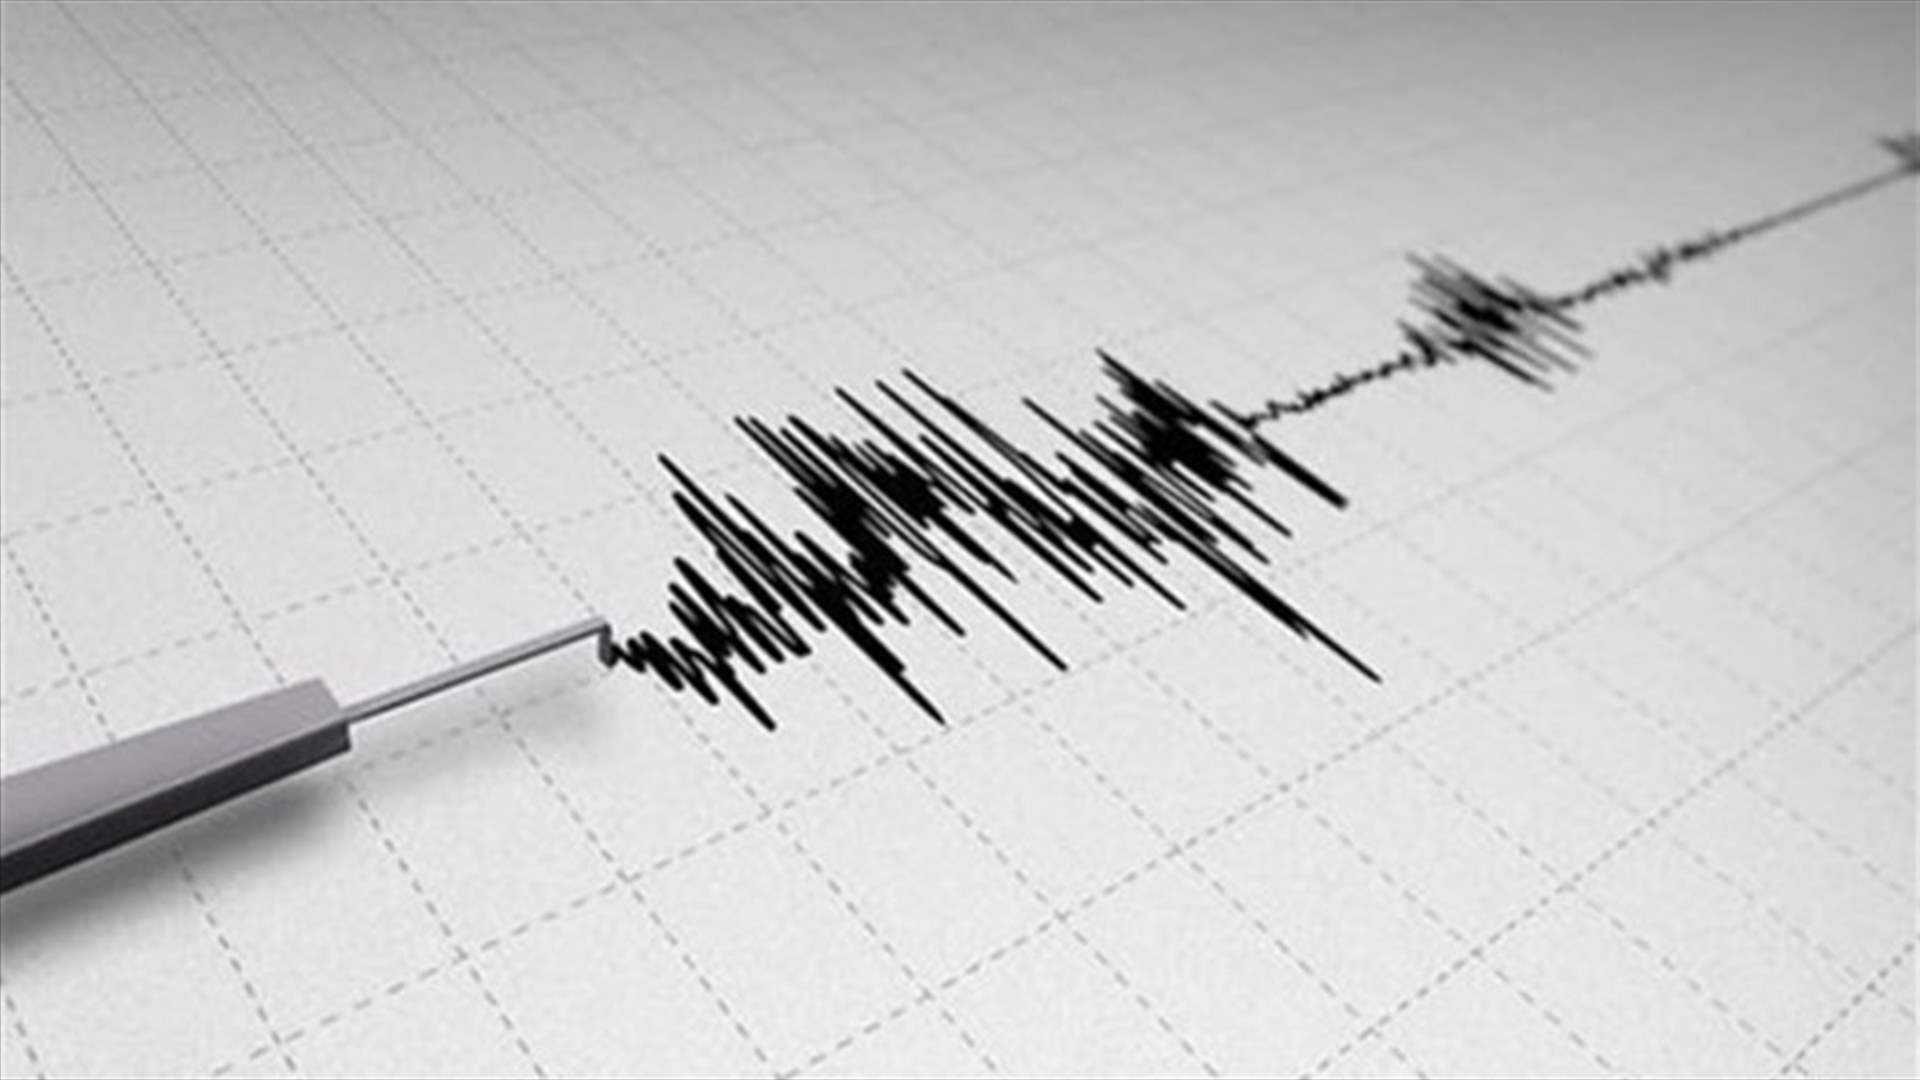 3.3 quake felt across eastern Tyre